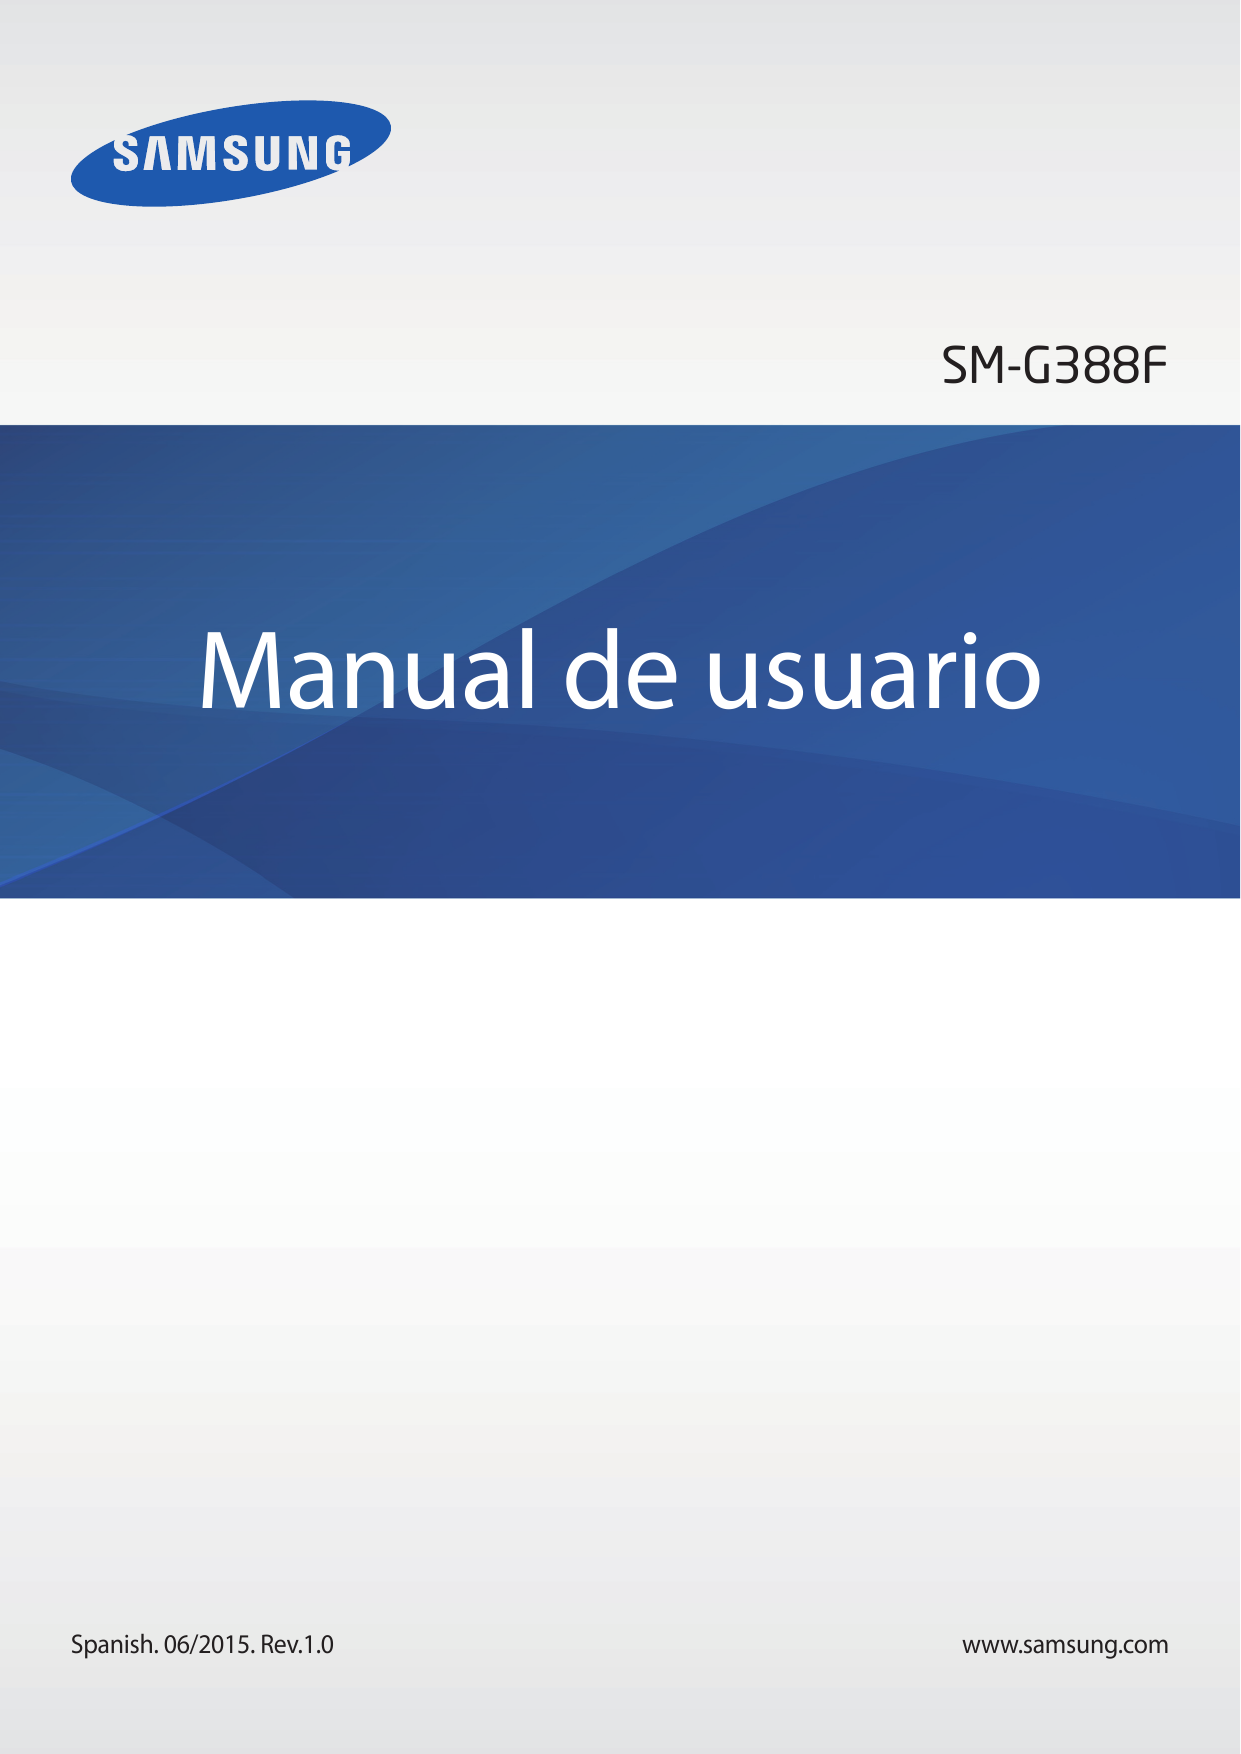 SM-G388FManual de usuarioSpanish. 06/2015. Rev.1.0www.samsung.com